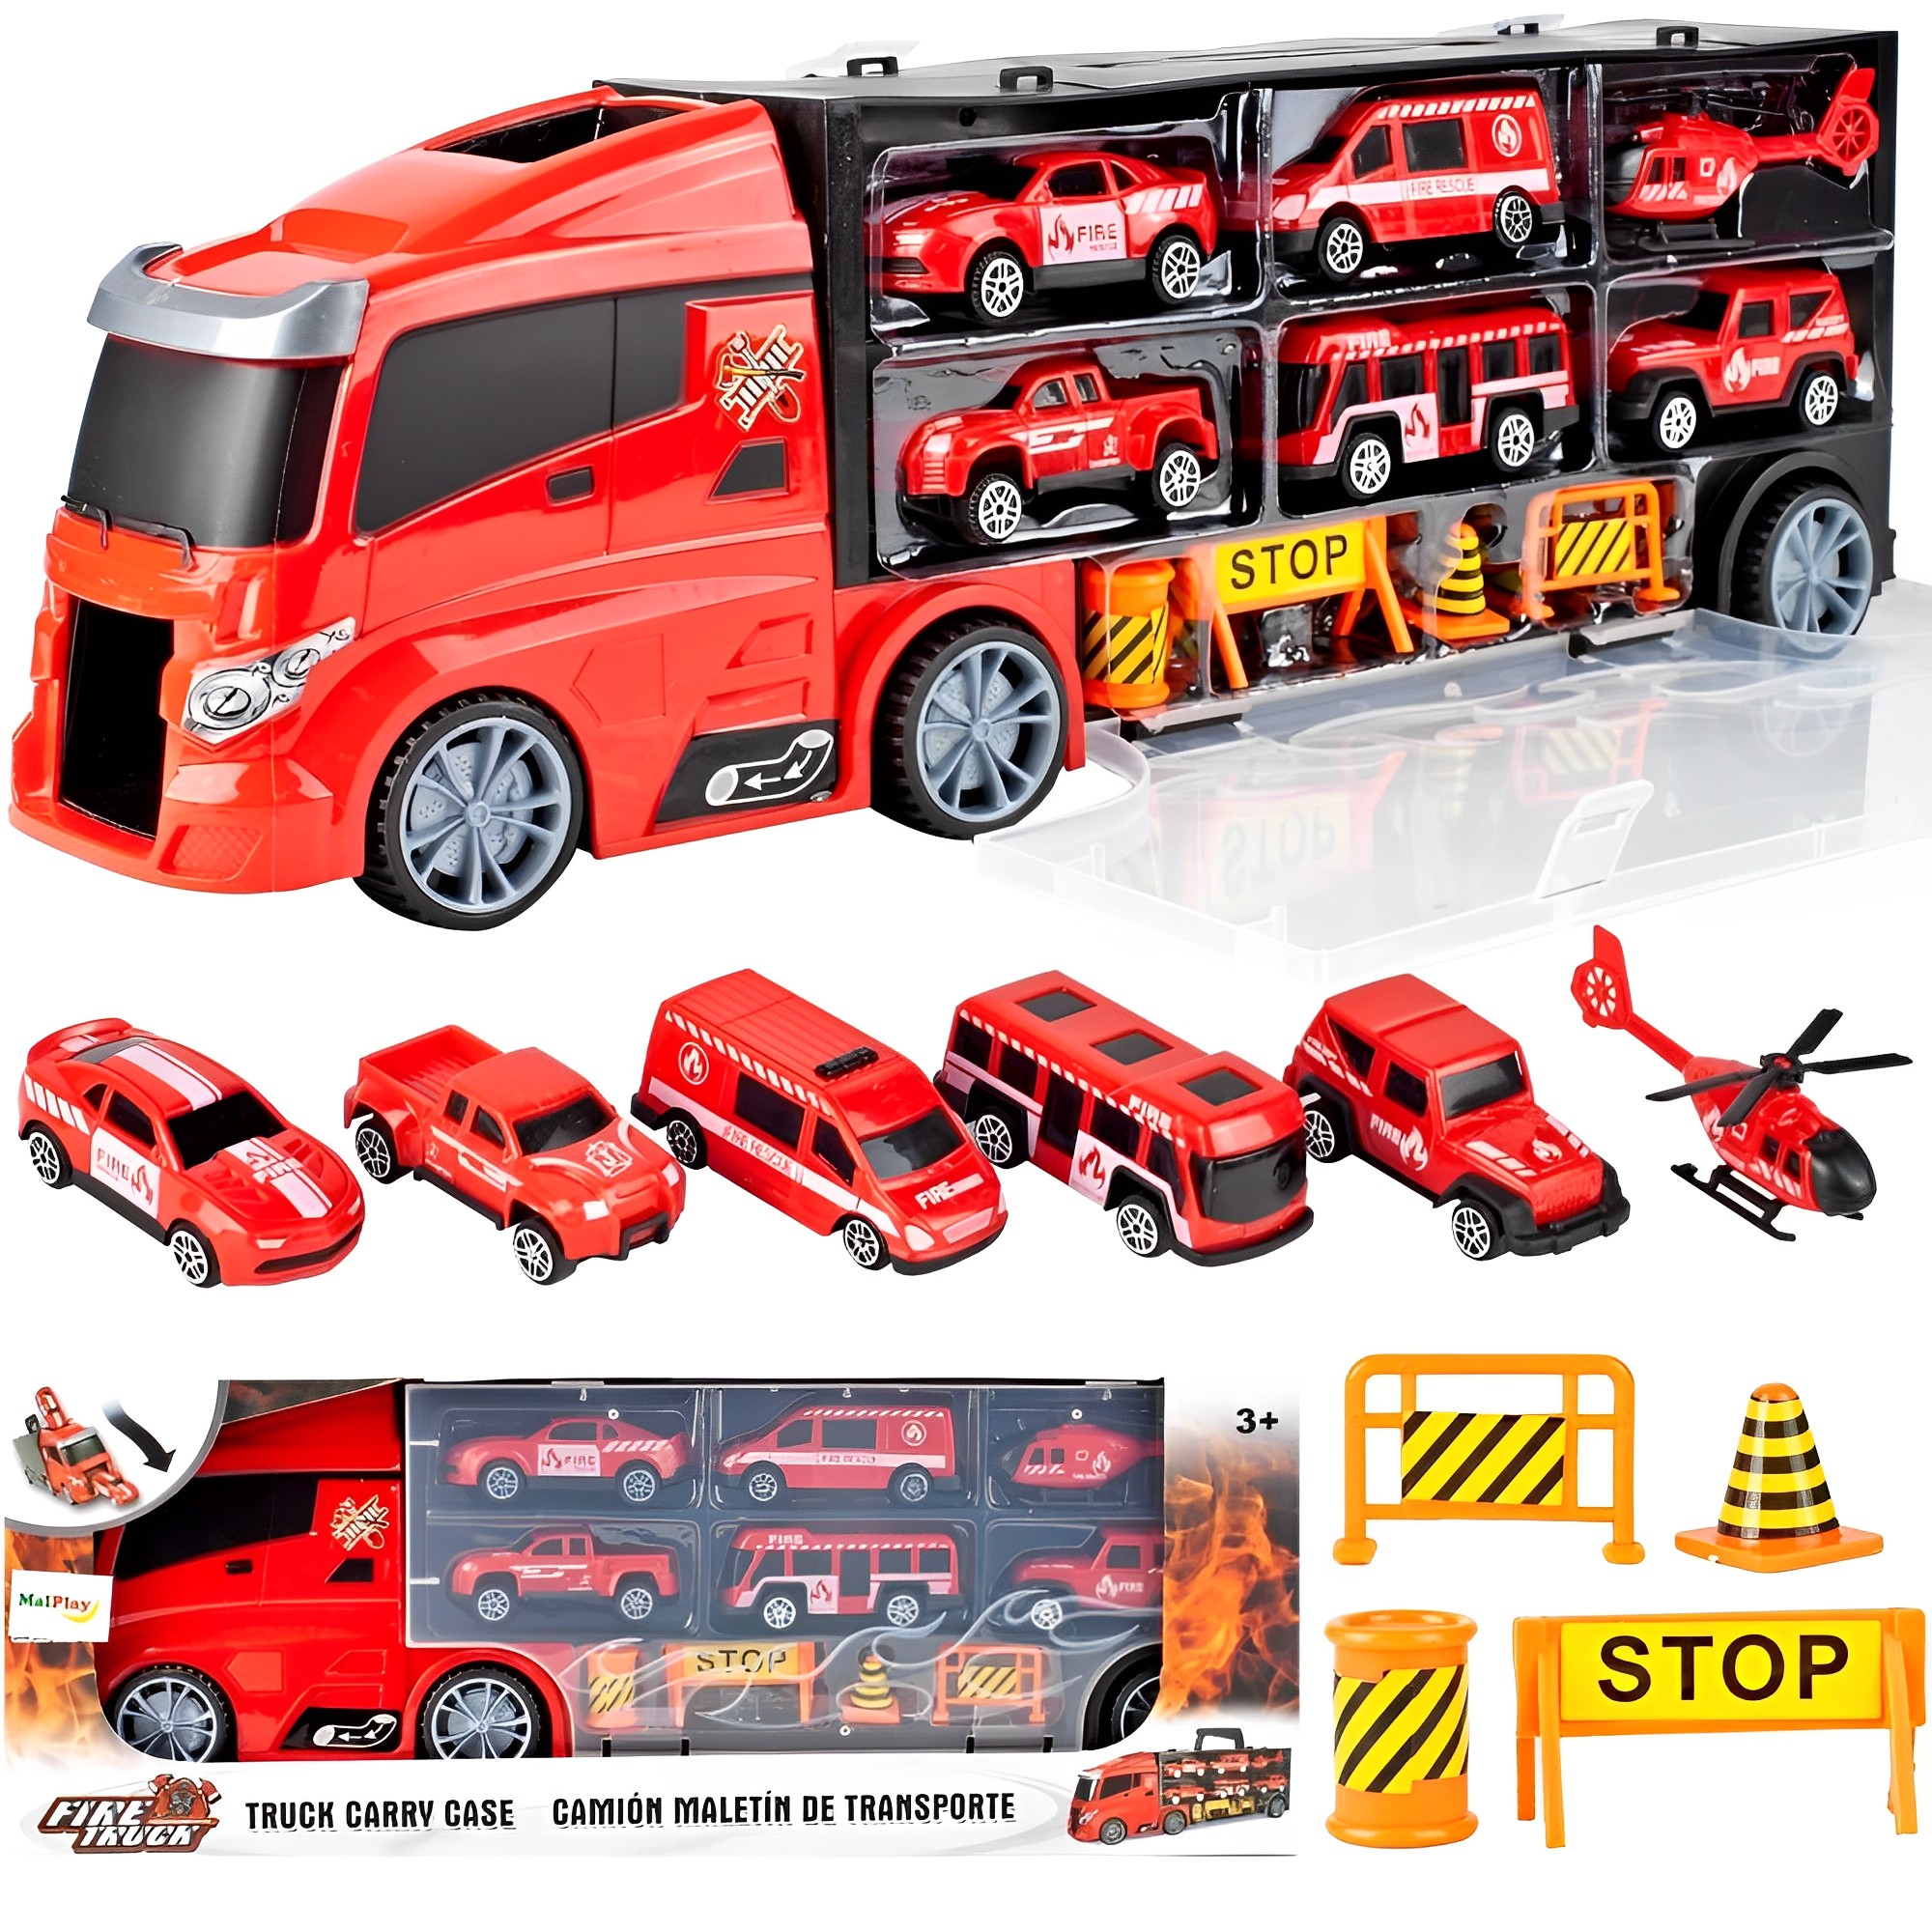 Camion interactiv Fire Truck idealSTORE cu 6 utilaje de pompieri Dimensiuni 40 x 9 x 13 cm, Include elicopter, autobuz